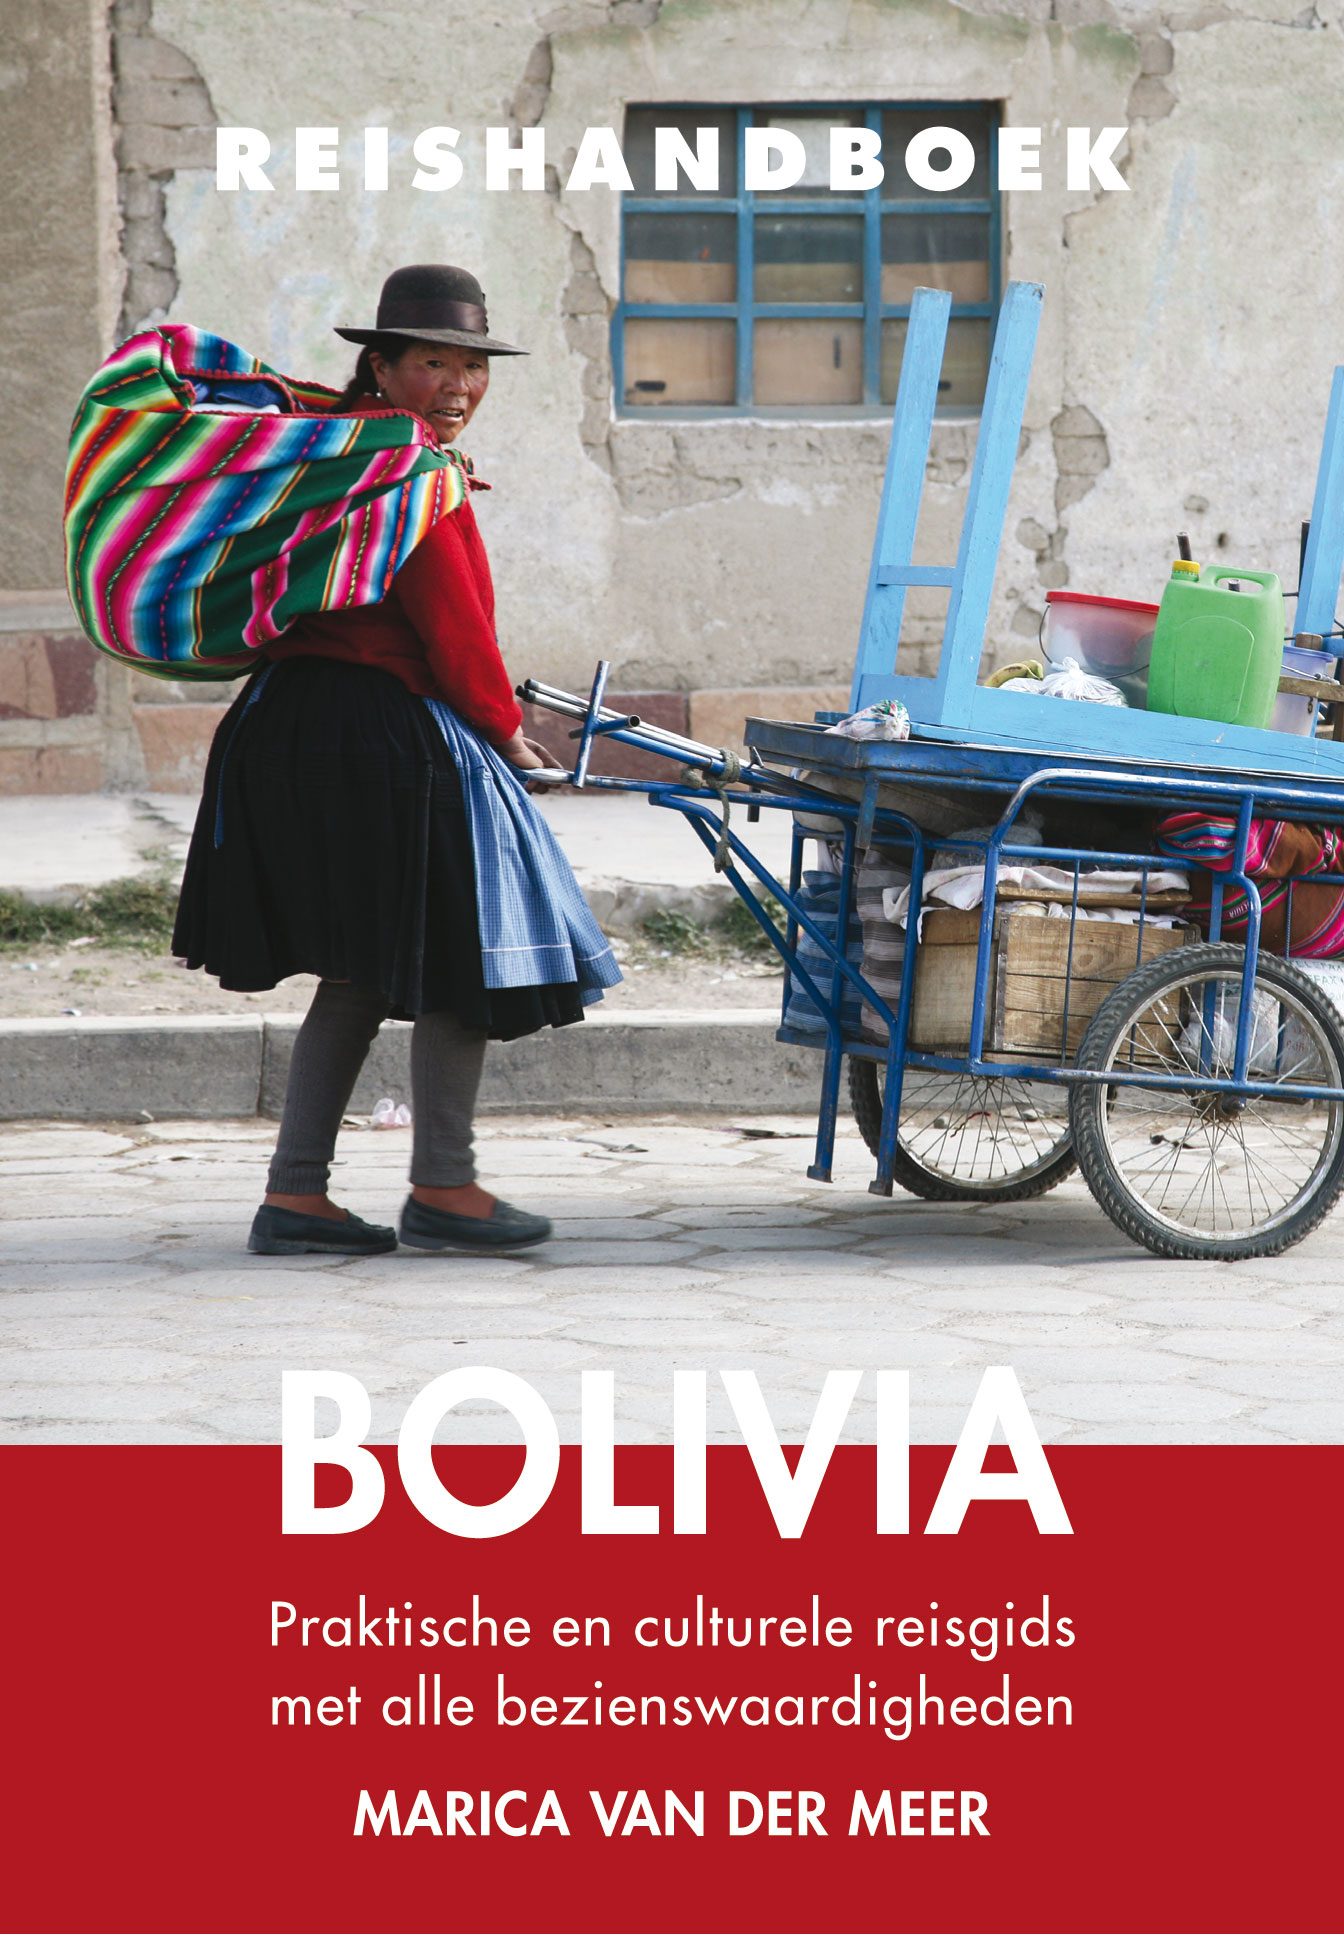 Online bestellen: Reisgids Reishandboek Bolivia | Uitgeverij Elmar